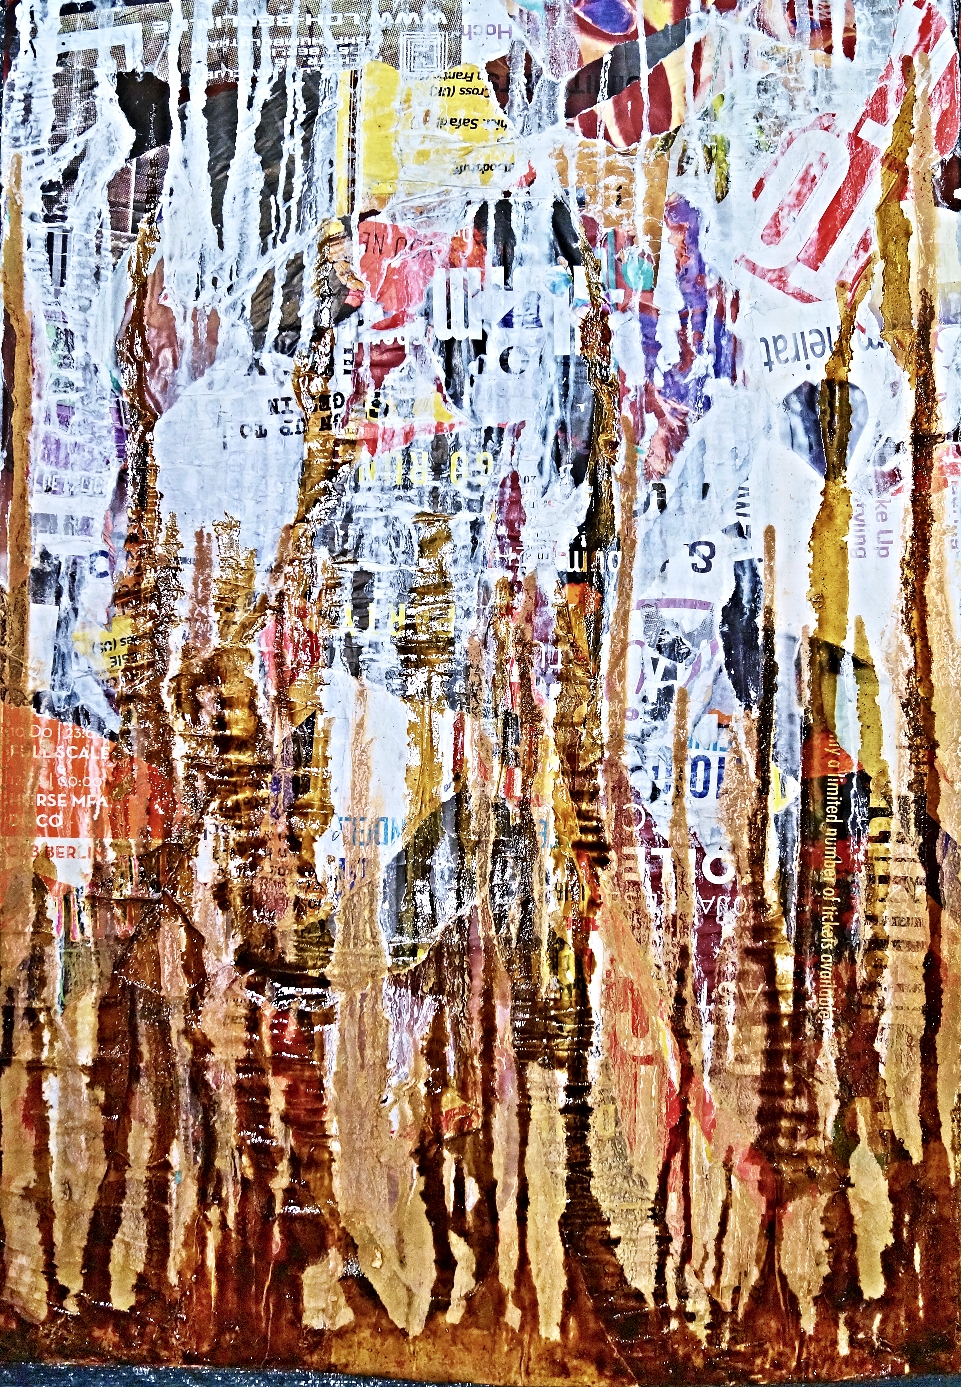 JoDDpopBERLN 1 

100x70cm 21.Dezember 2015

Decollage/Collage von Plakaten aus der Kastanienallee in Berlin Prenzlauer Berg, auf Leinwand